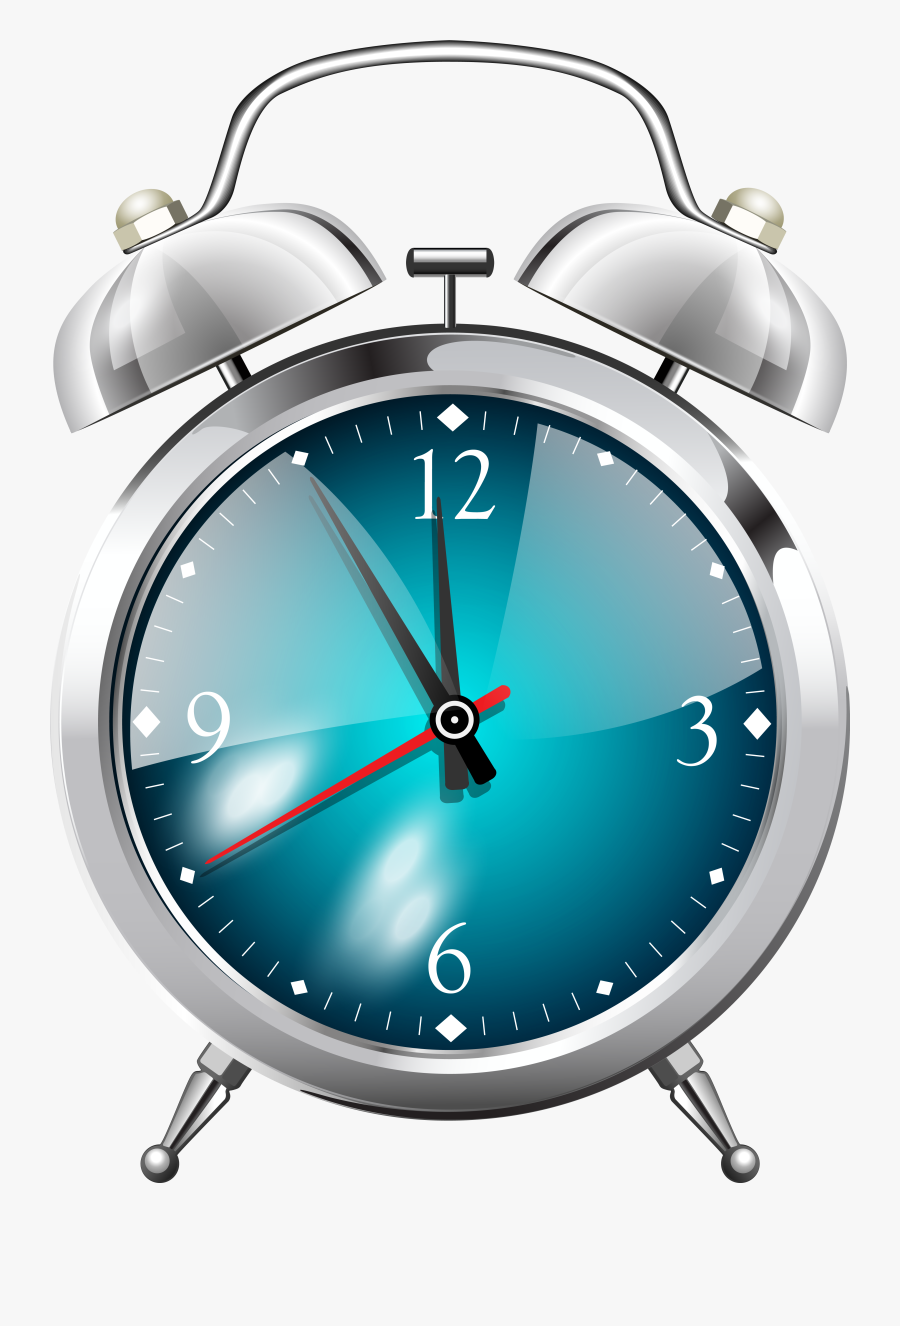 Alarm Clock Png Transparent, Transparent Clipart